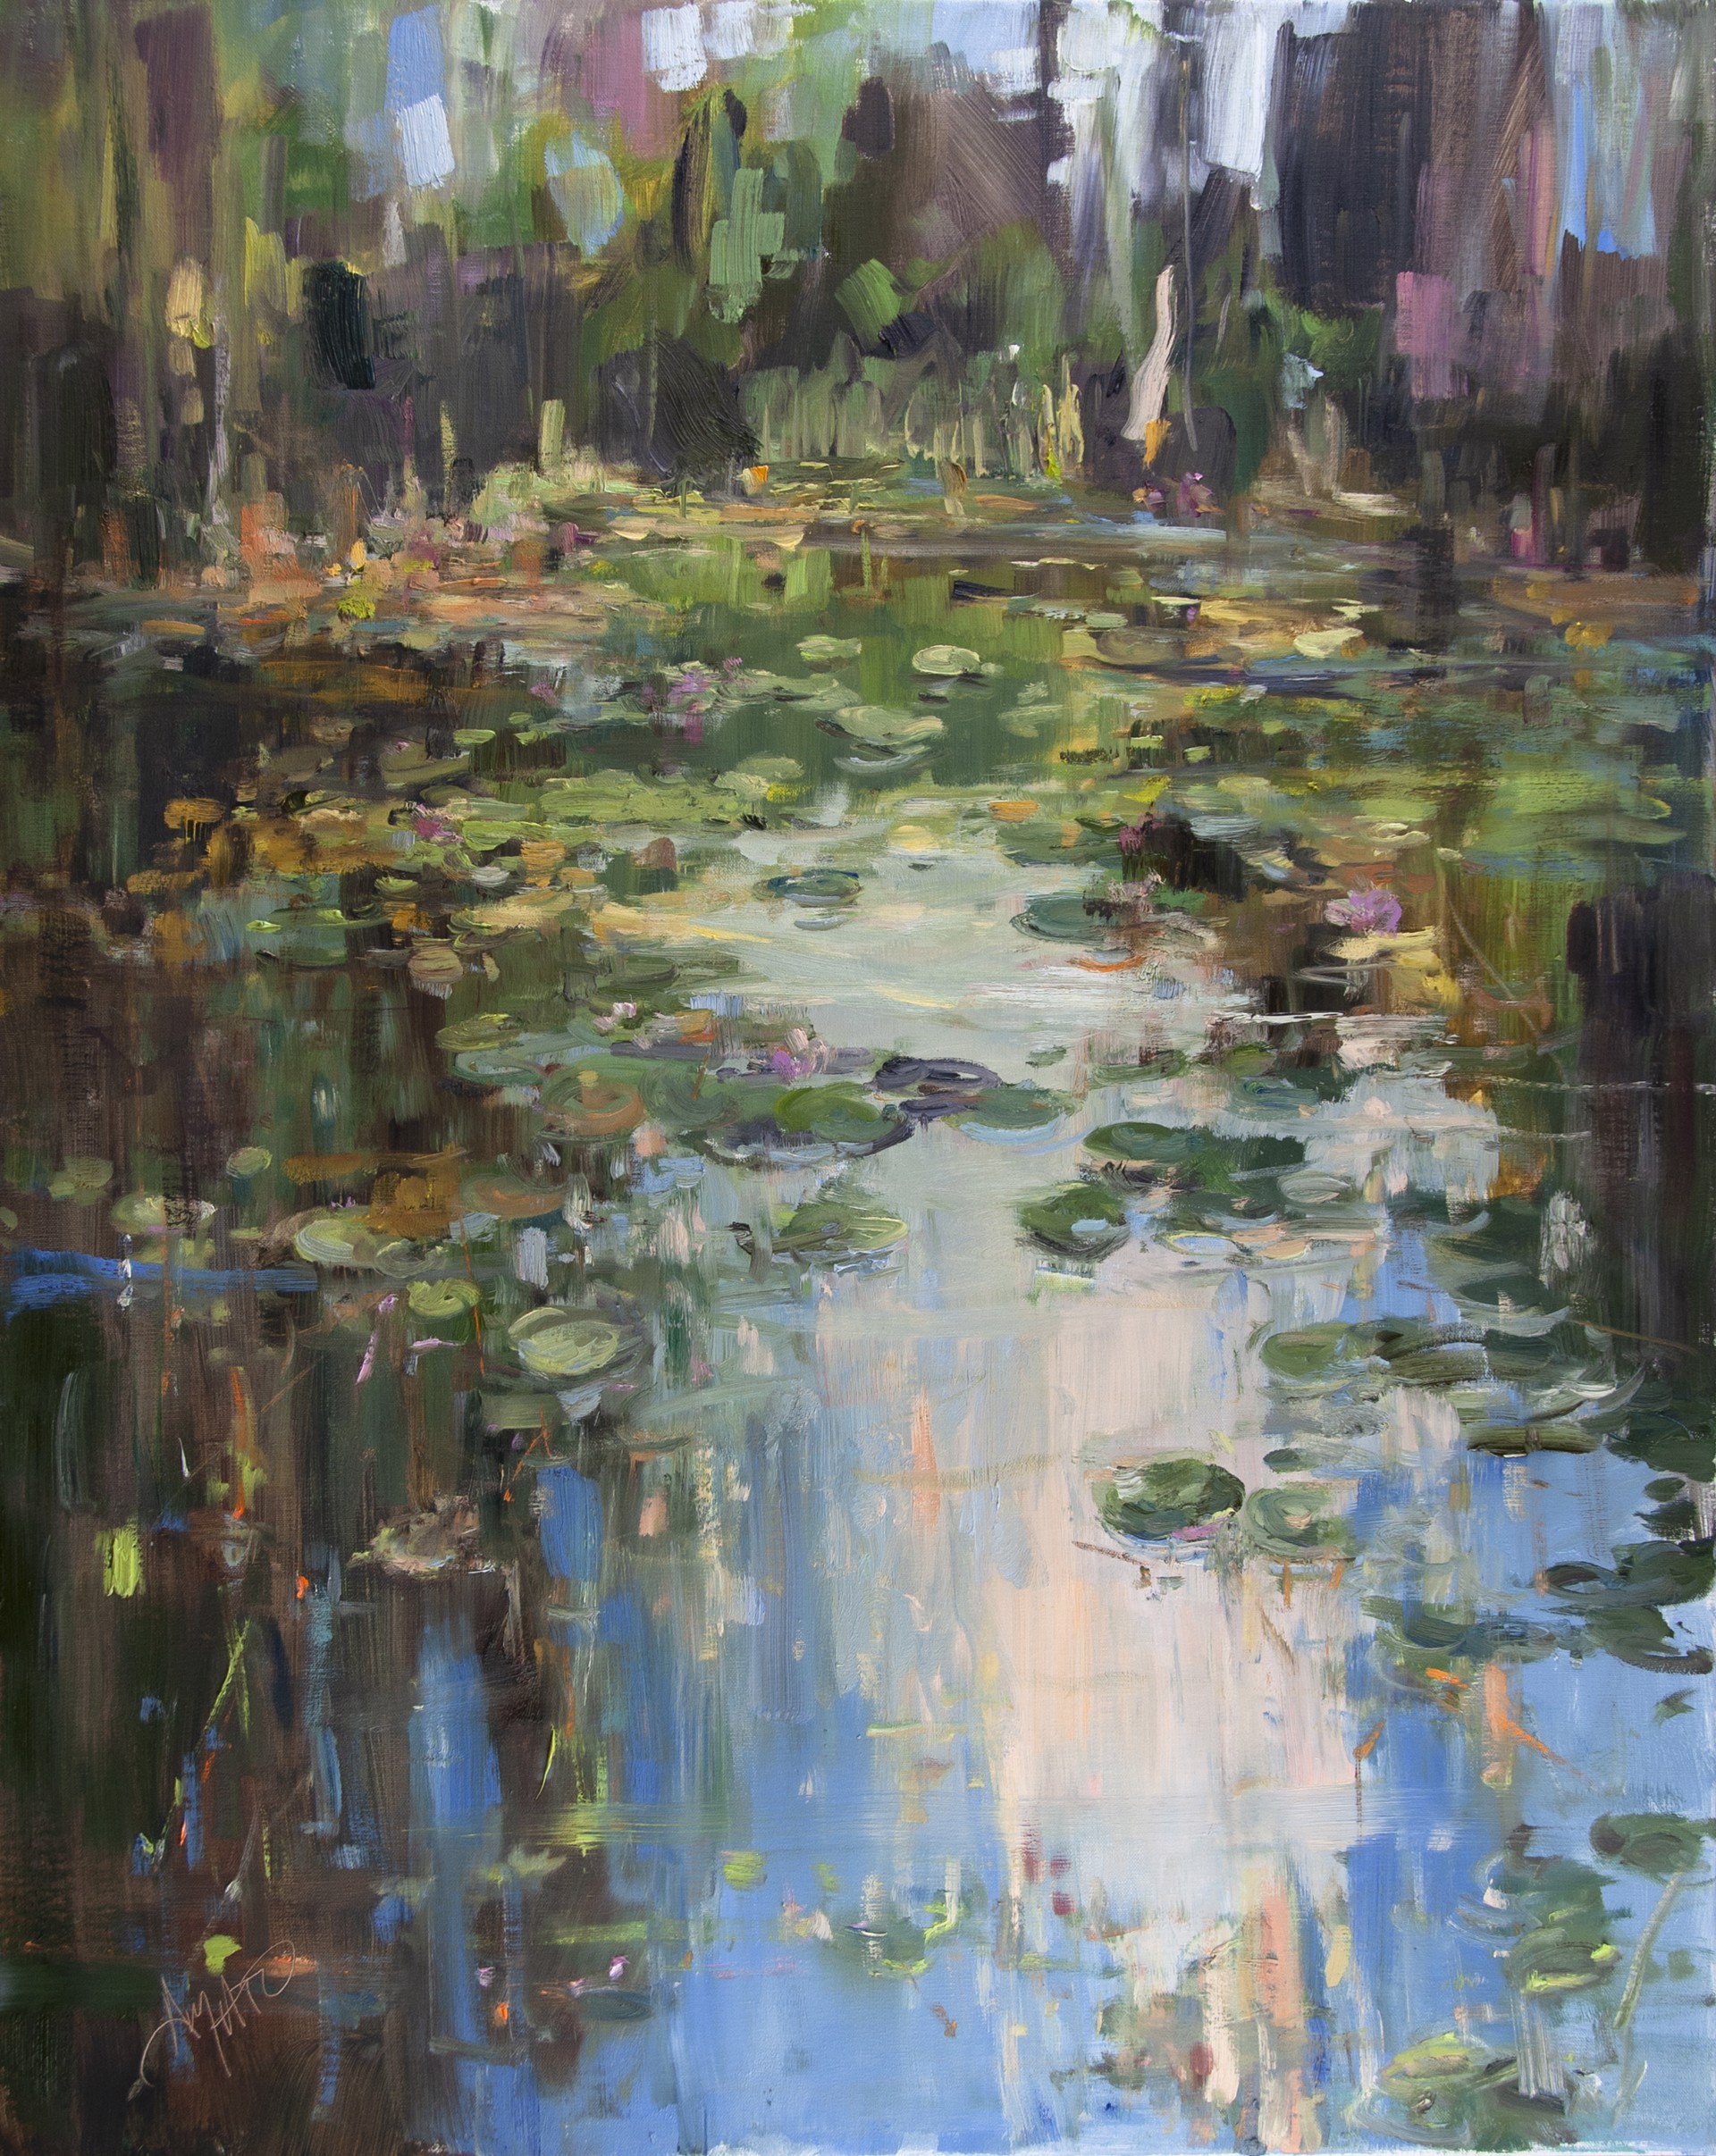 On Sleeper Pond by Stephanie Amato